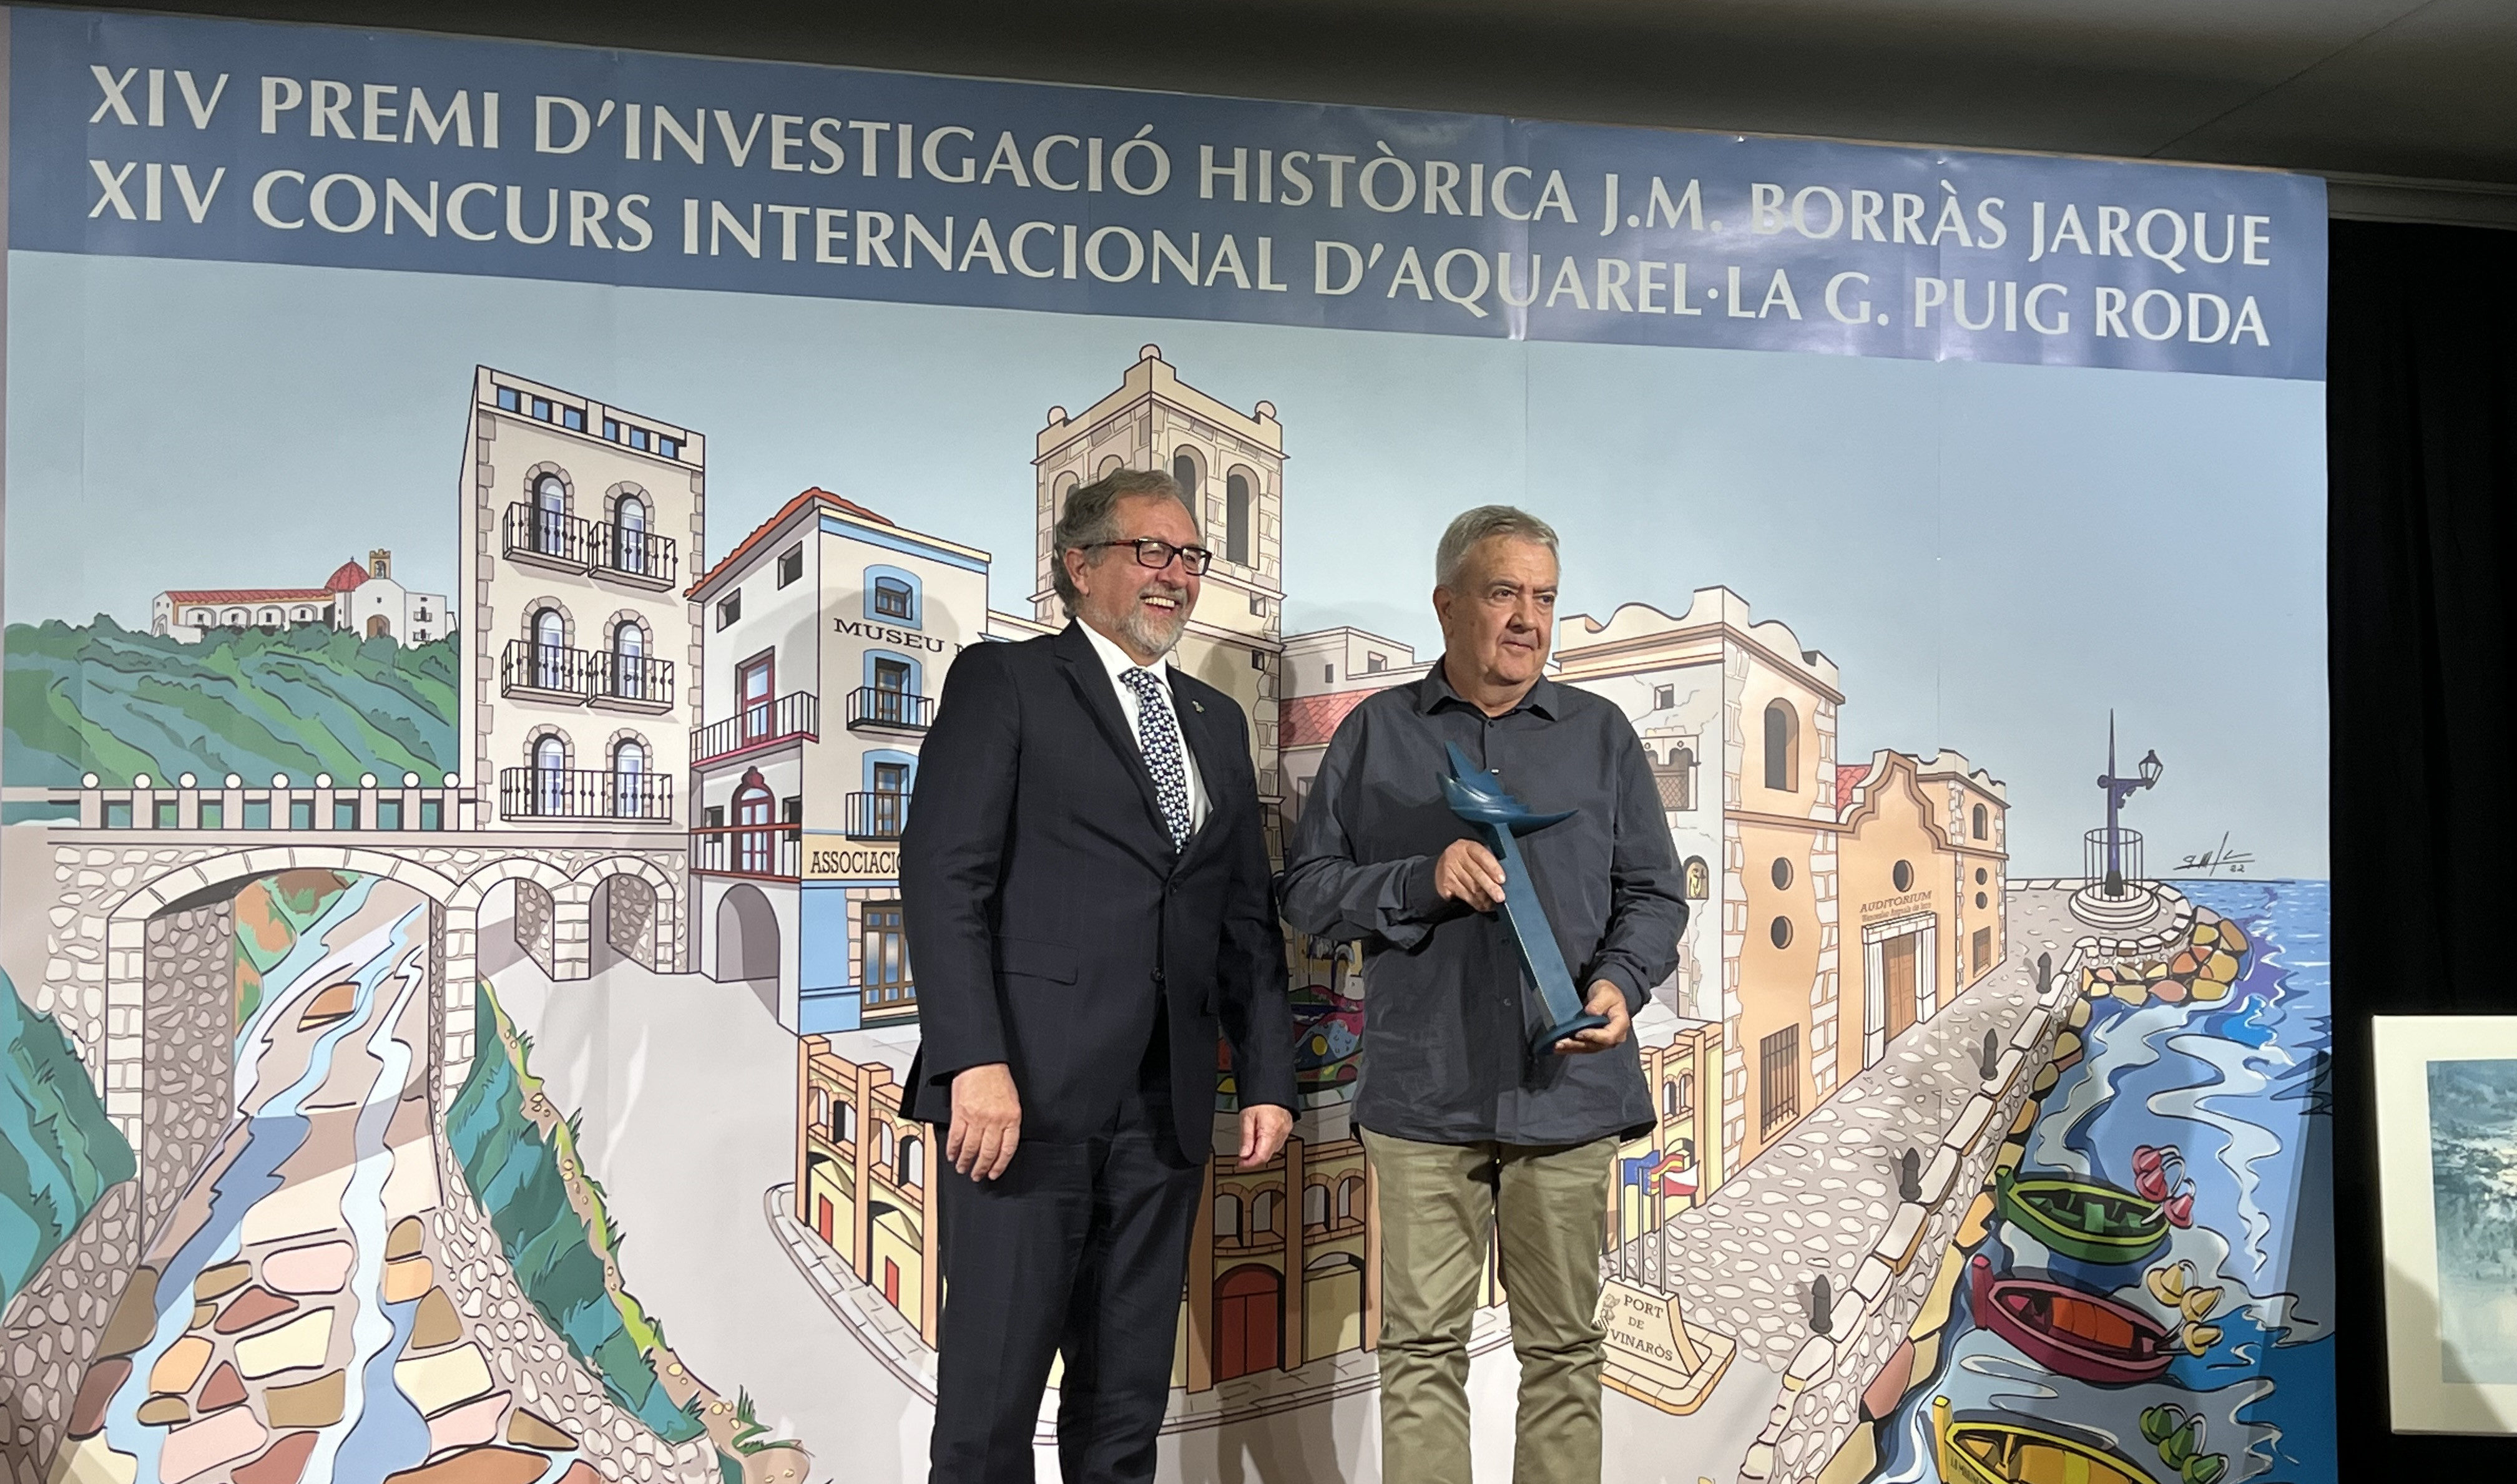 Martí entrega el premi del XIV Concurs Internacional d'Aquarel·la Puig Roda en la Nit de la Cultura de Vinaròs